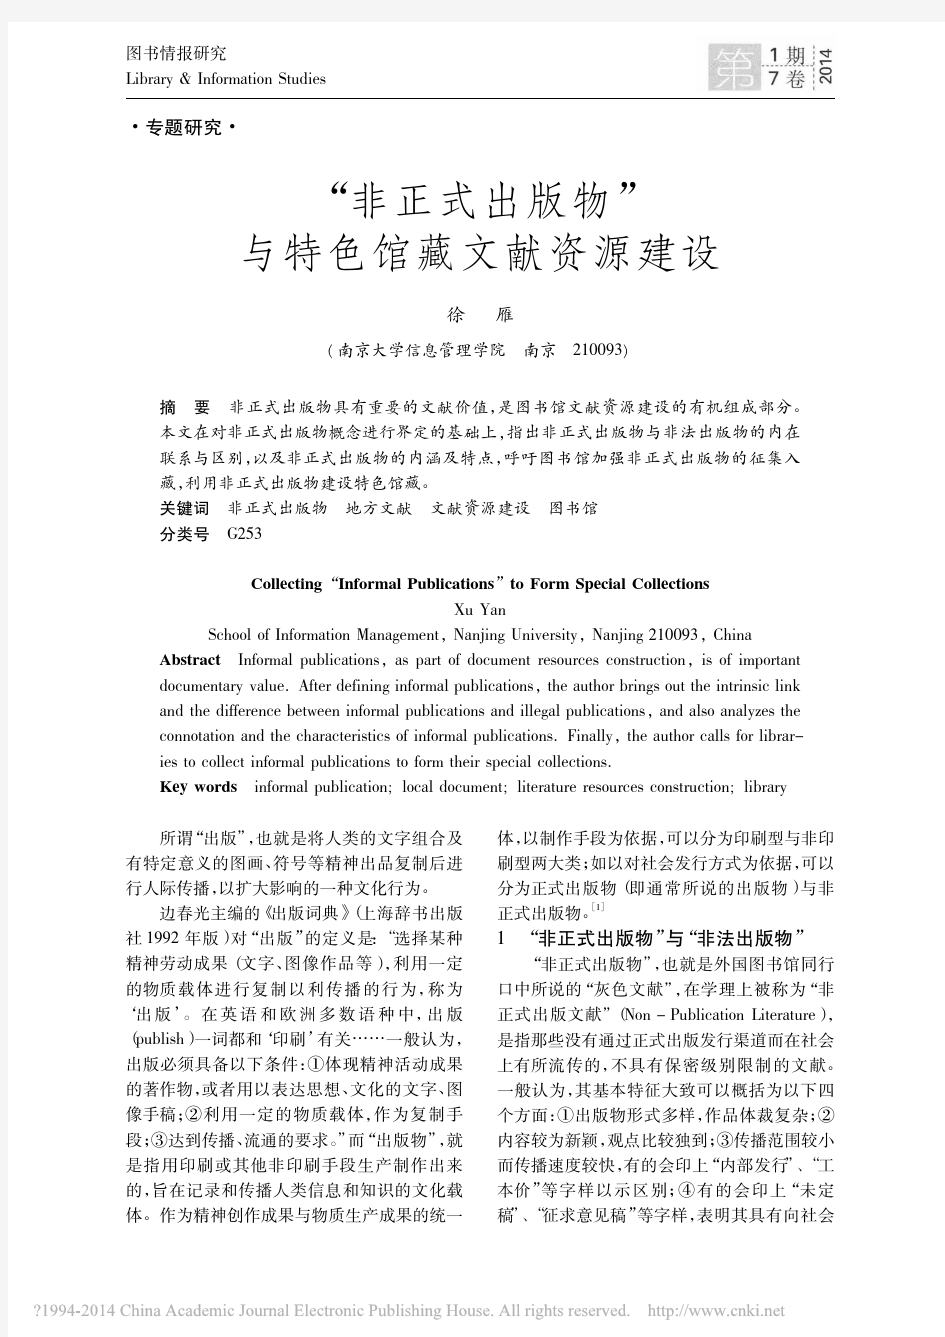 非正式出版物与特色馆藏文献资源建设